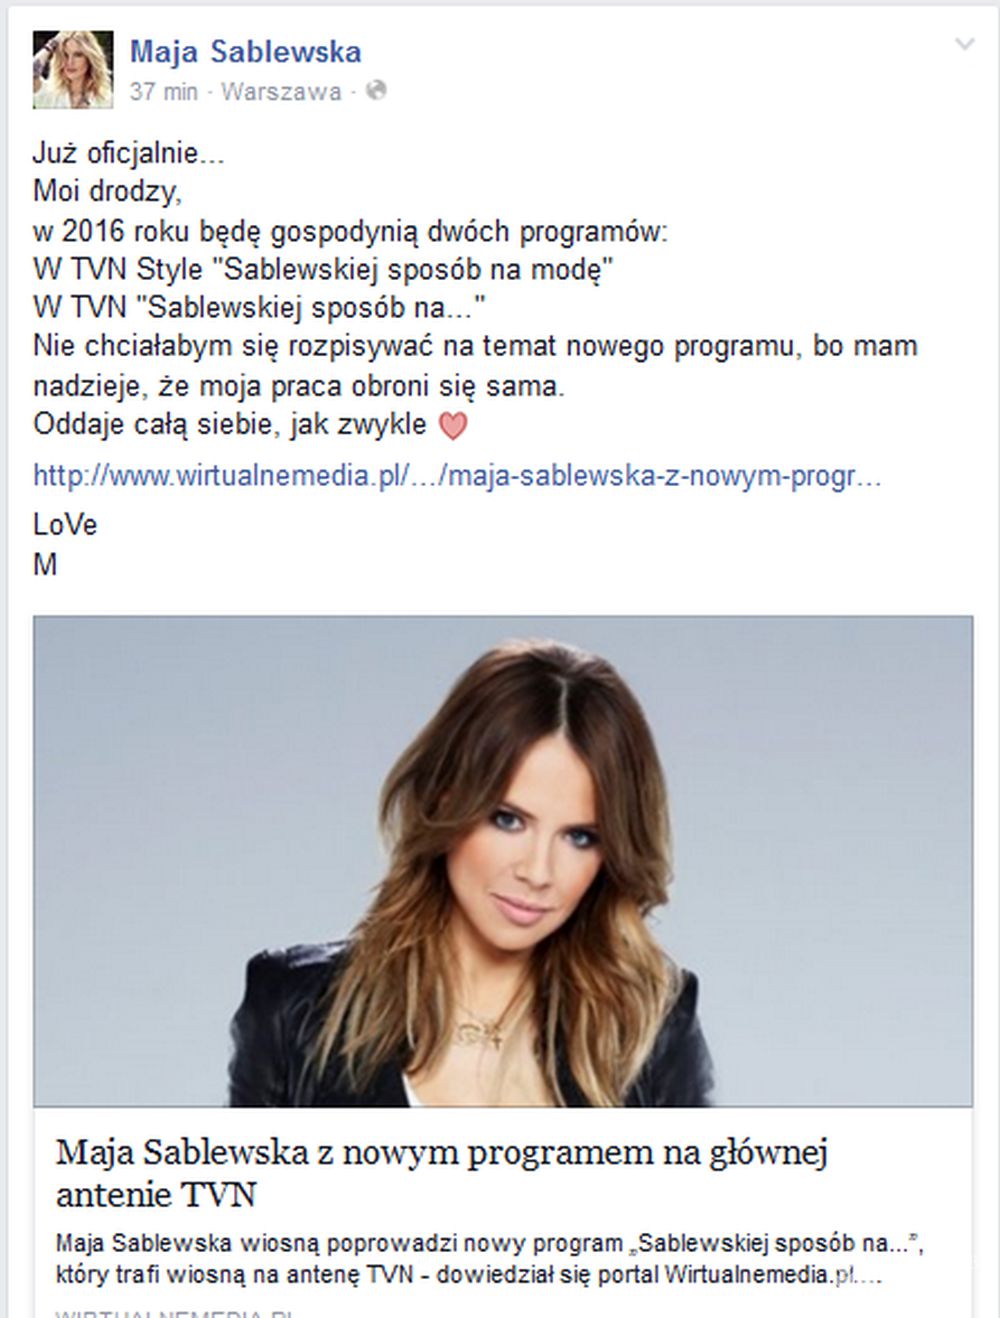 Maja Sablewska skomentowała swój nowy program